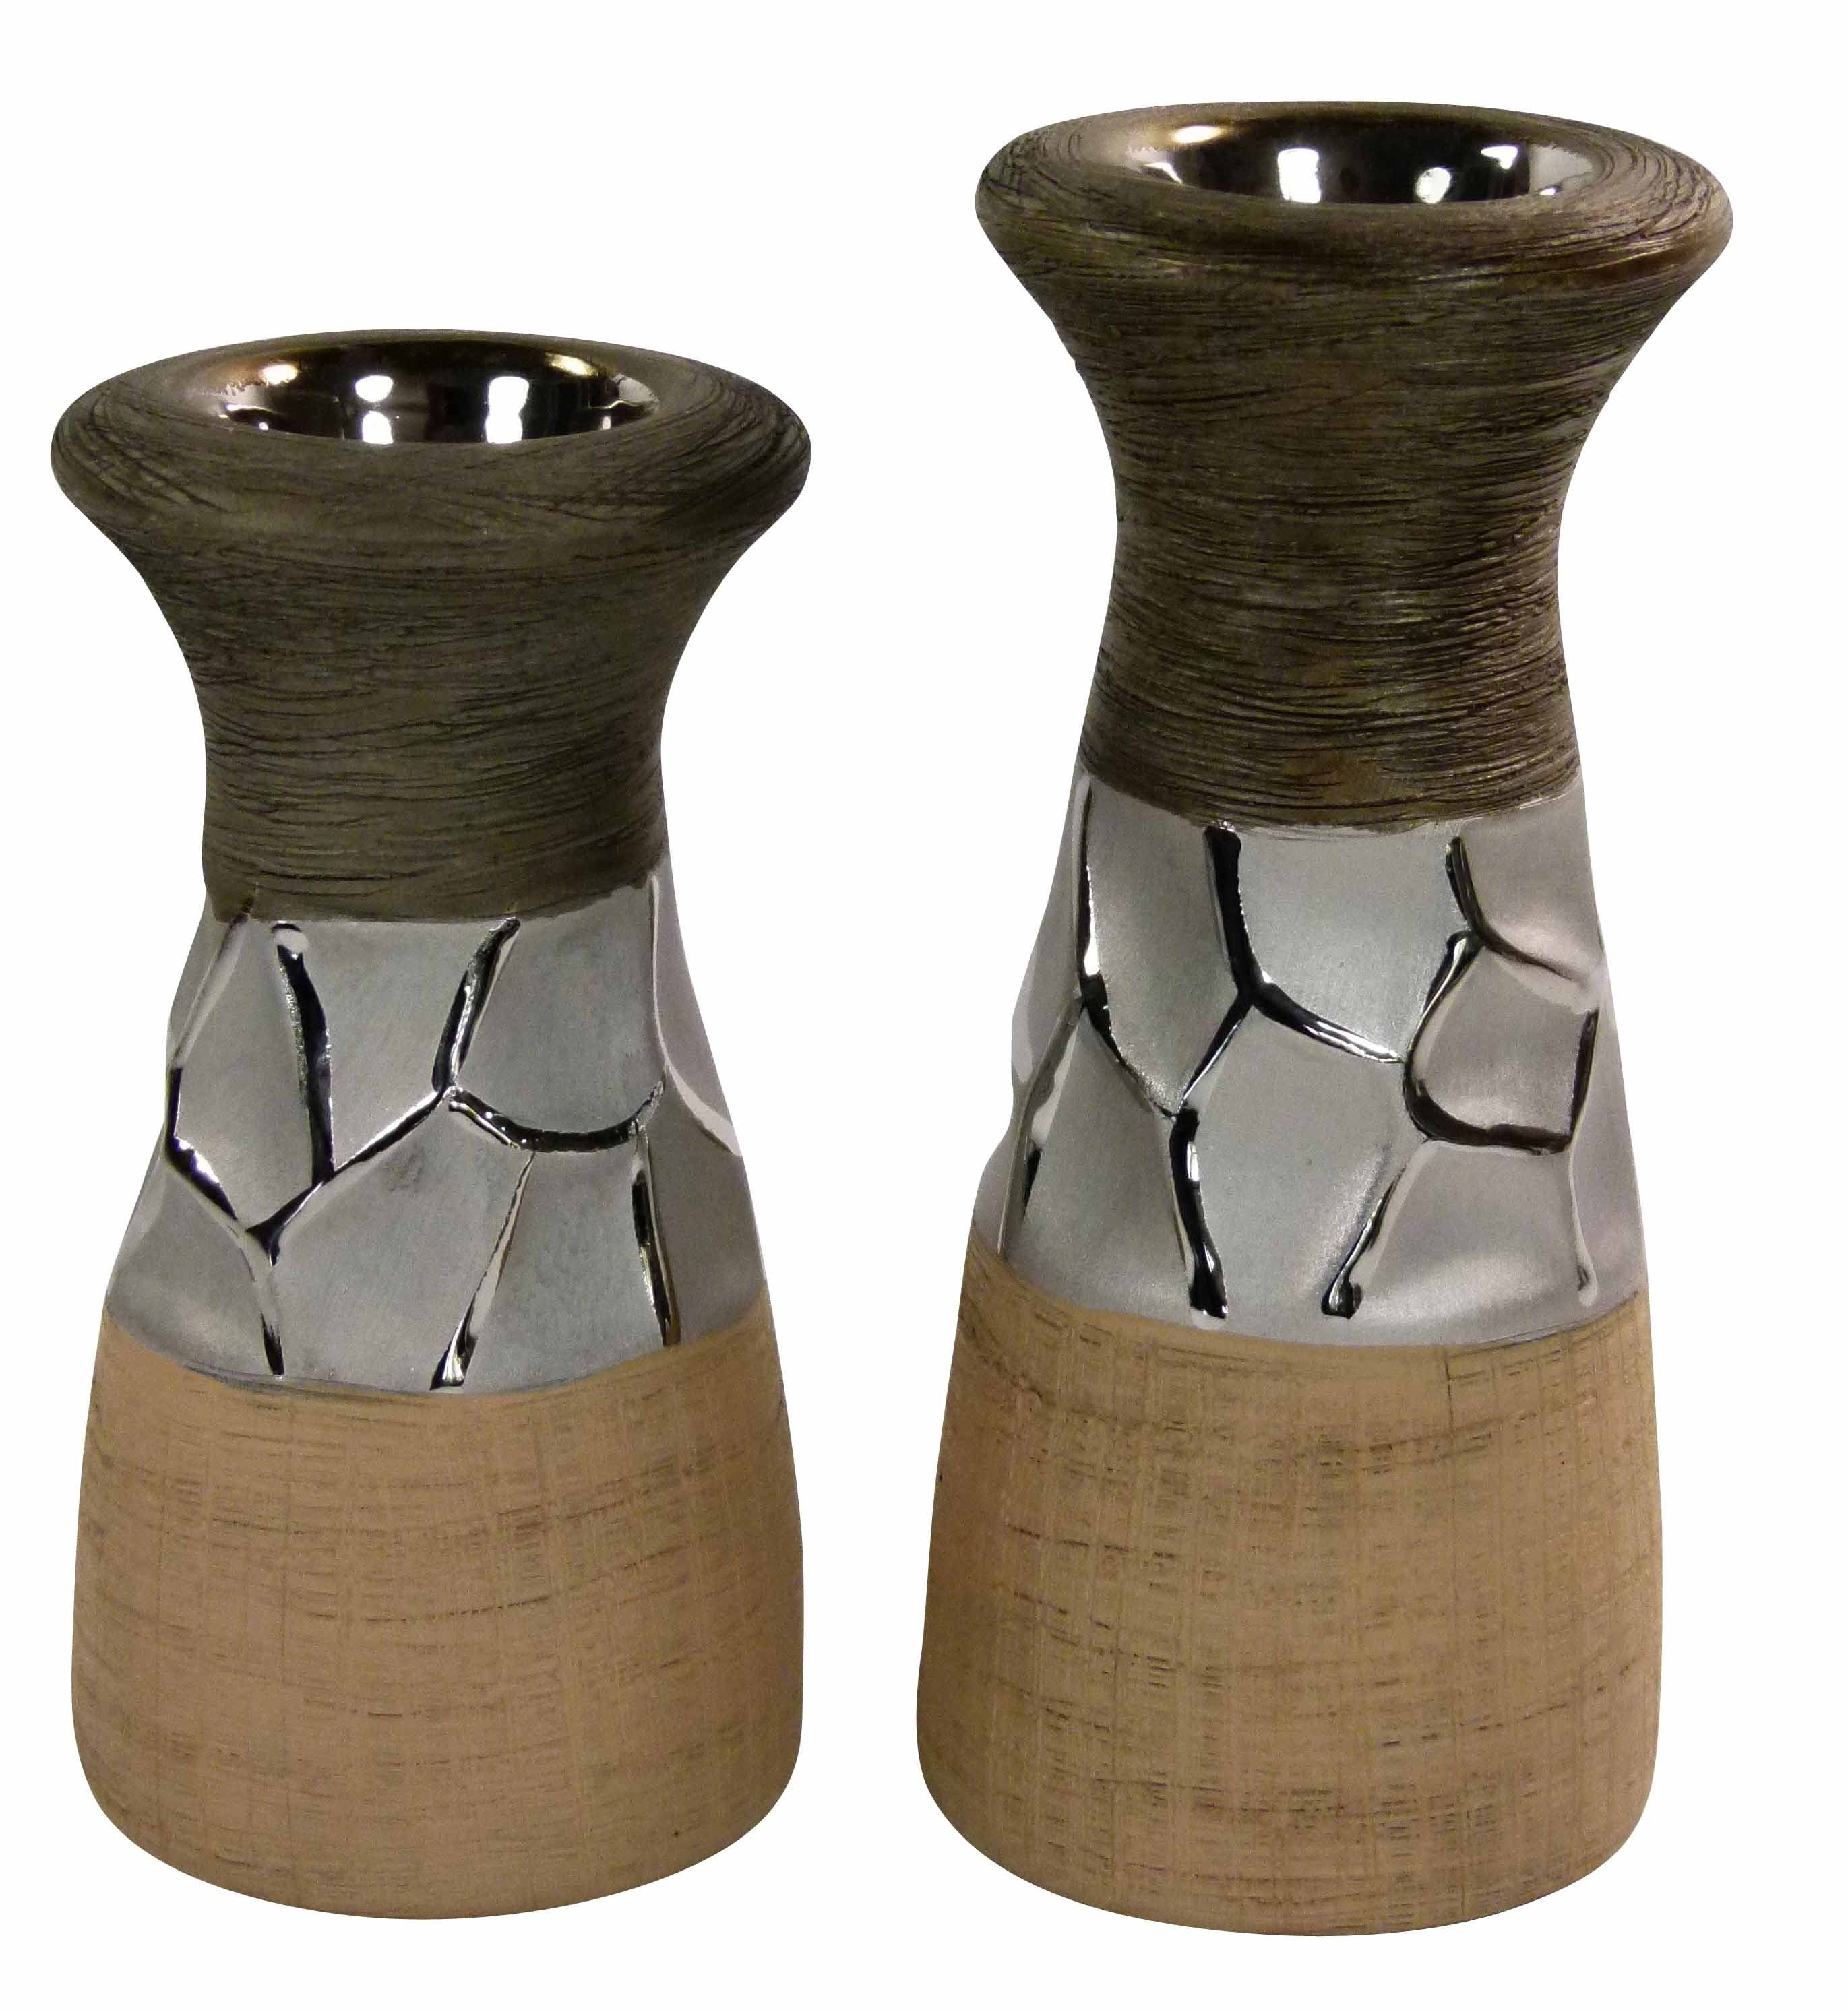 GlasArt Kerzenhalter Keramik Kerzenhalter Leuchter Teelicht Säulenförmig Braun Natur | Kerzenständer